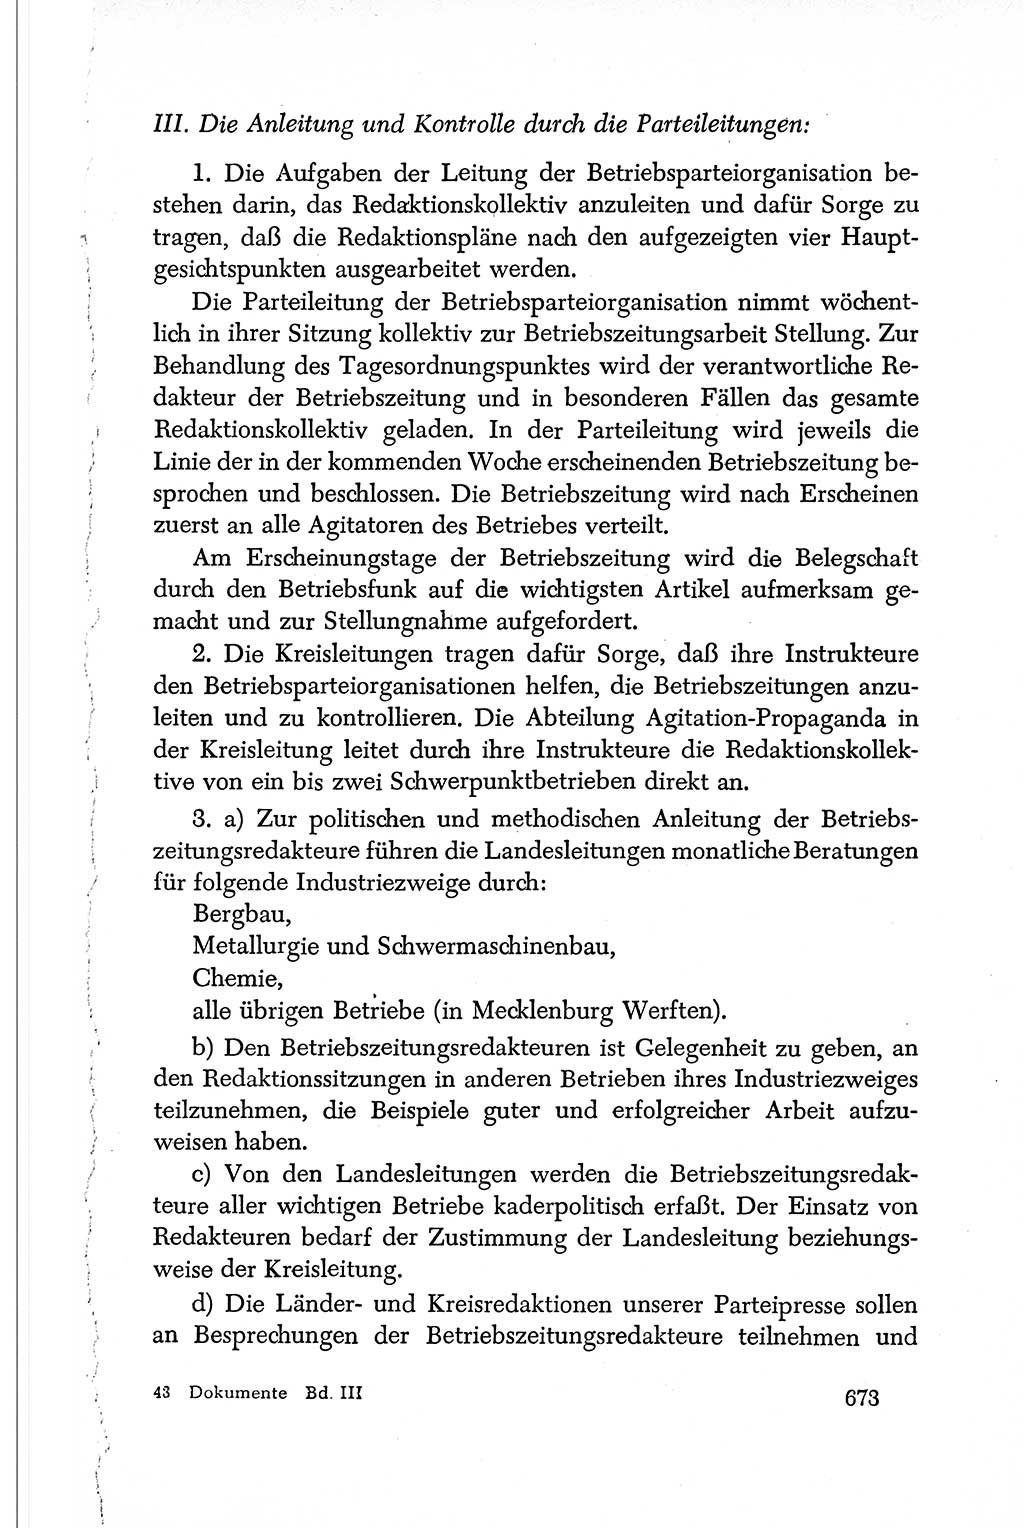 Dokumente der Sozialistischen Einheitspartei Deutschlands (SED) [Deutsche Demokratische Republik (DDR)] 1950-1952, Seite 673 (Dok. SED DDR 1950-1952, S. 673)